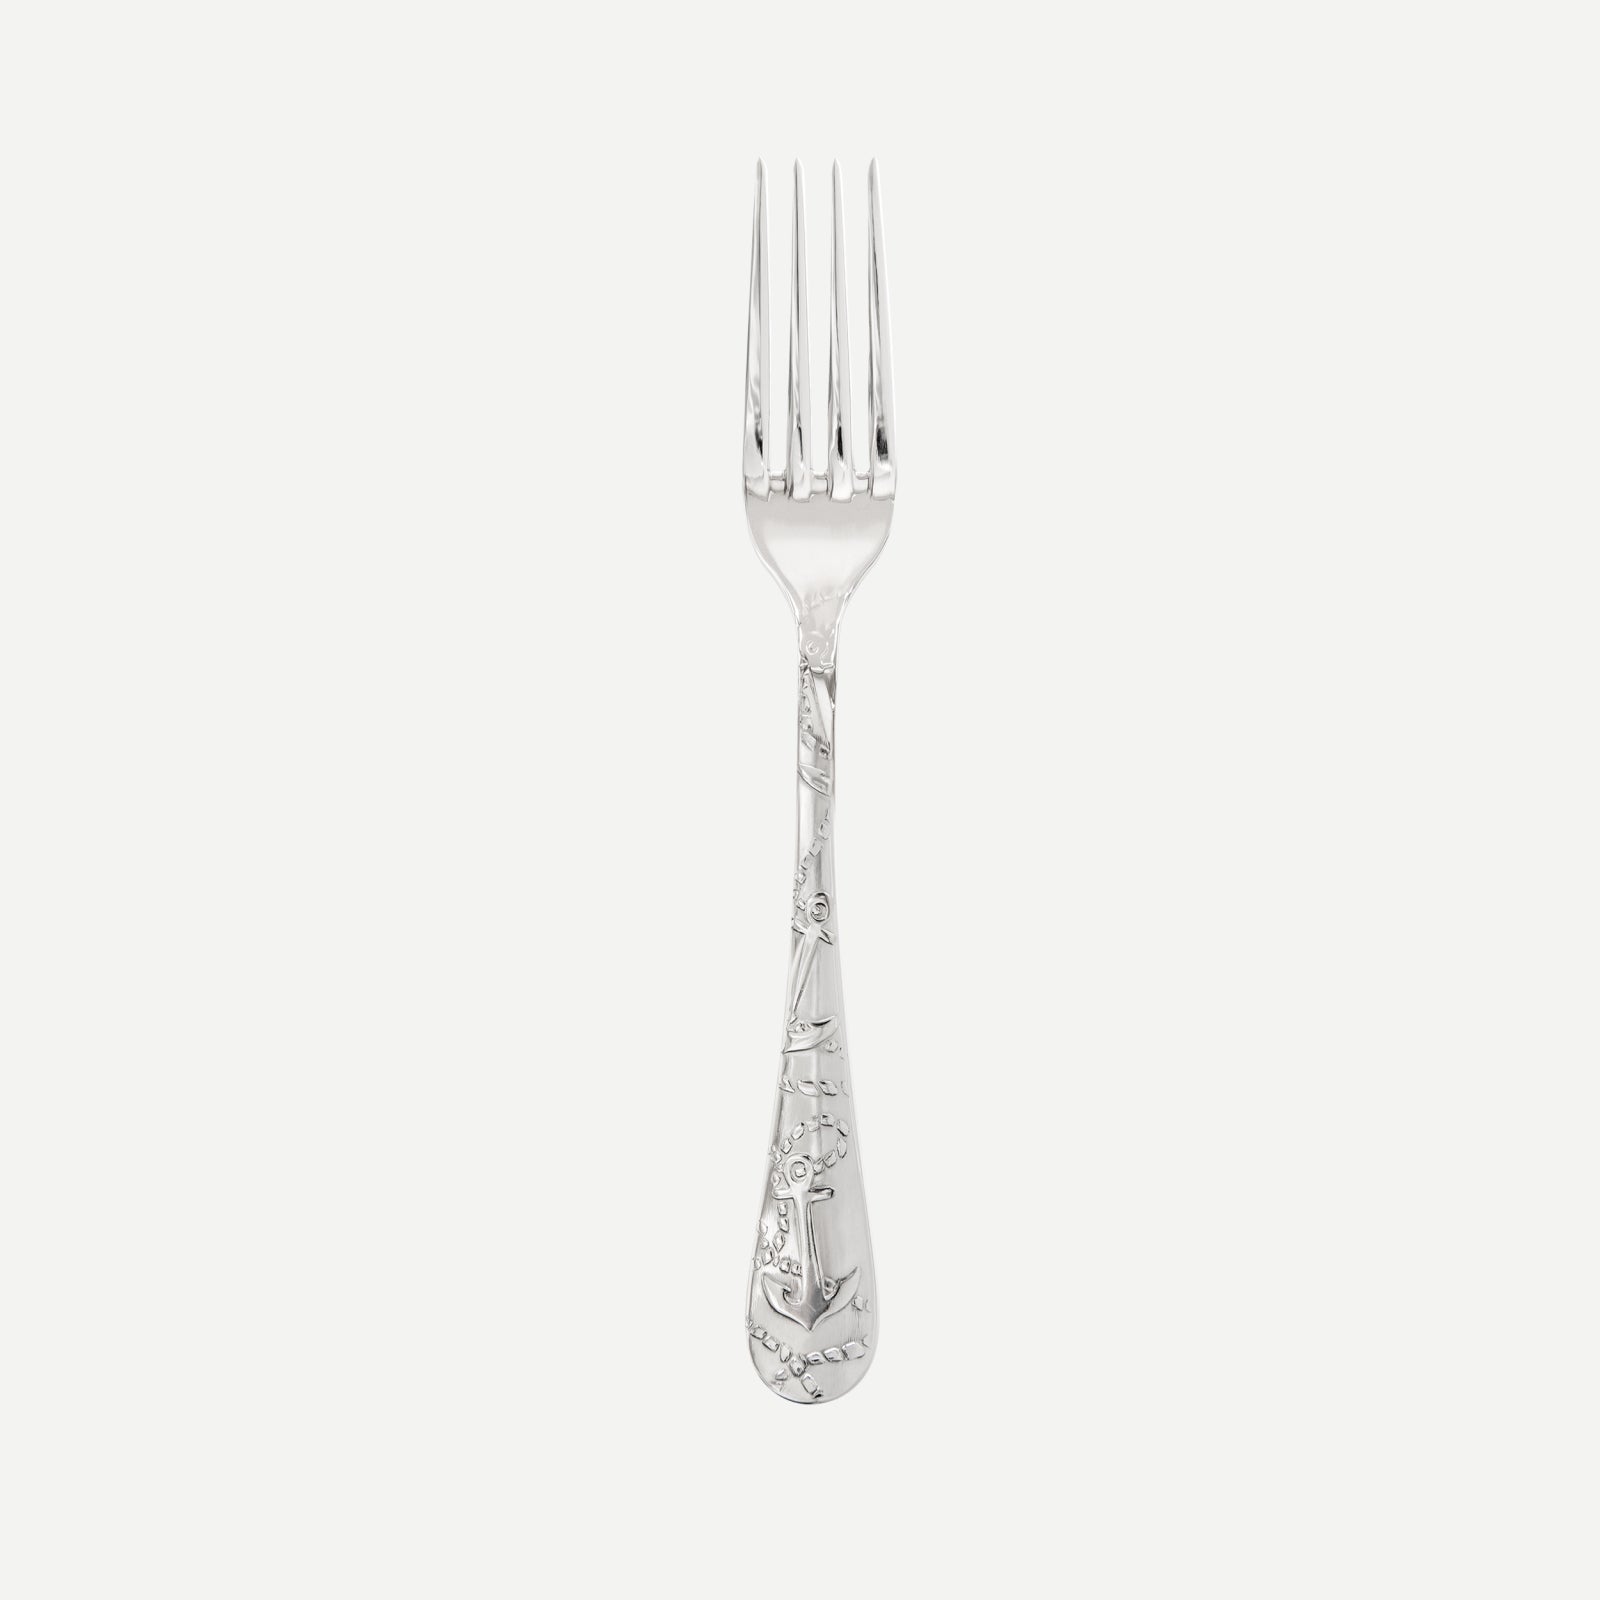 Dinner fork - Saint Malo - Stainless steel